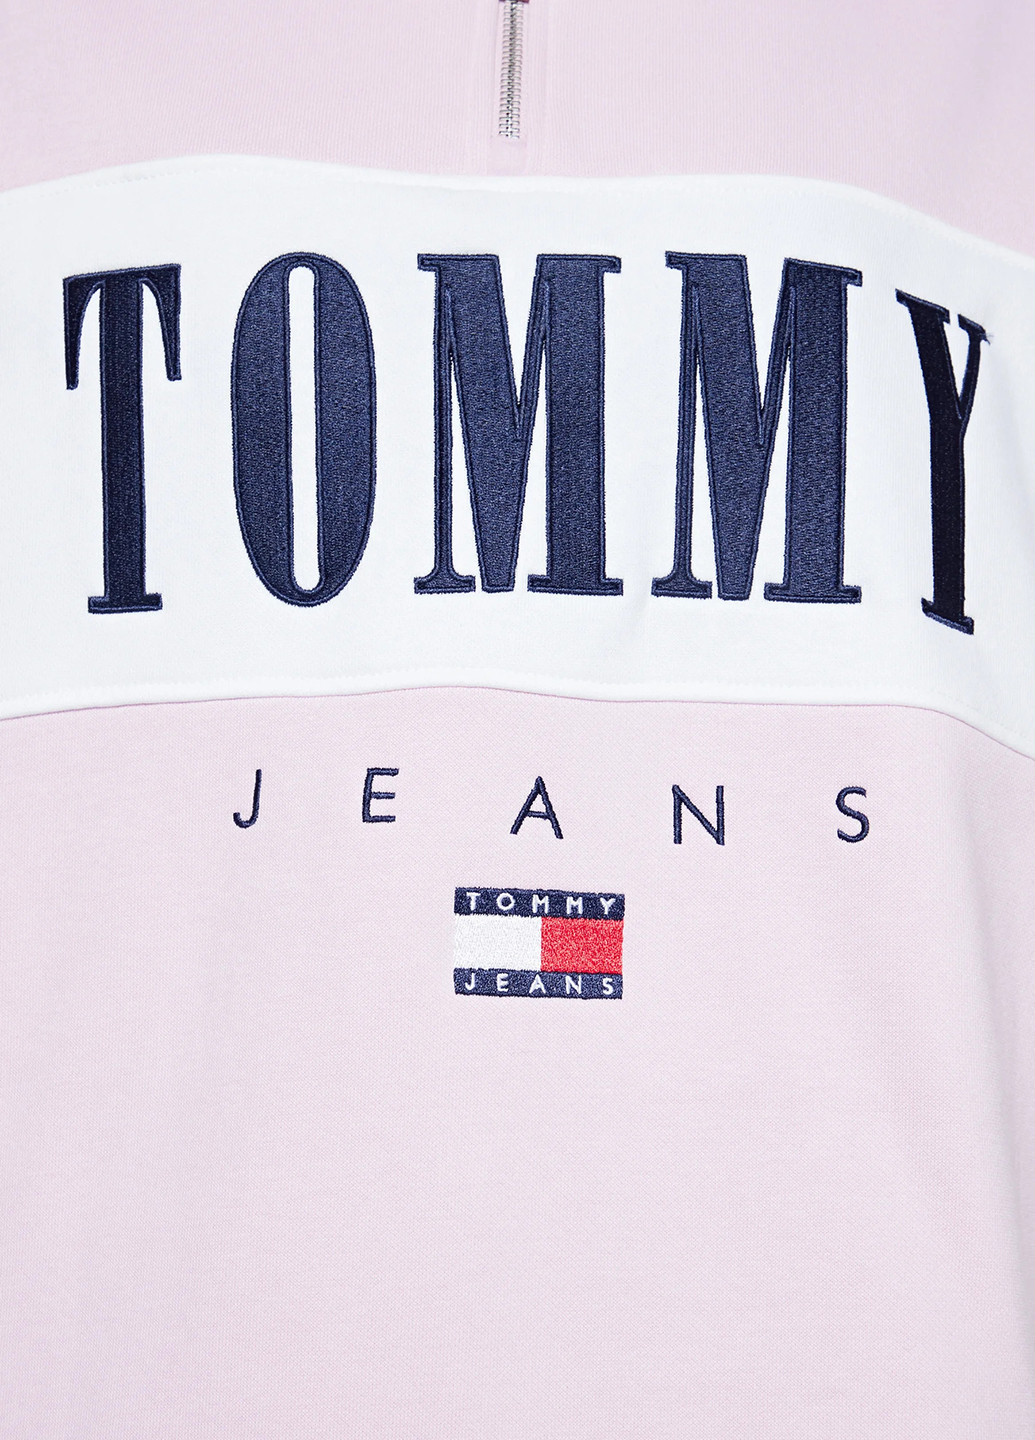 Розовое кэжуал платье платье-свитшот Tommy Hilfiger с логотипом